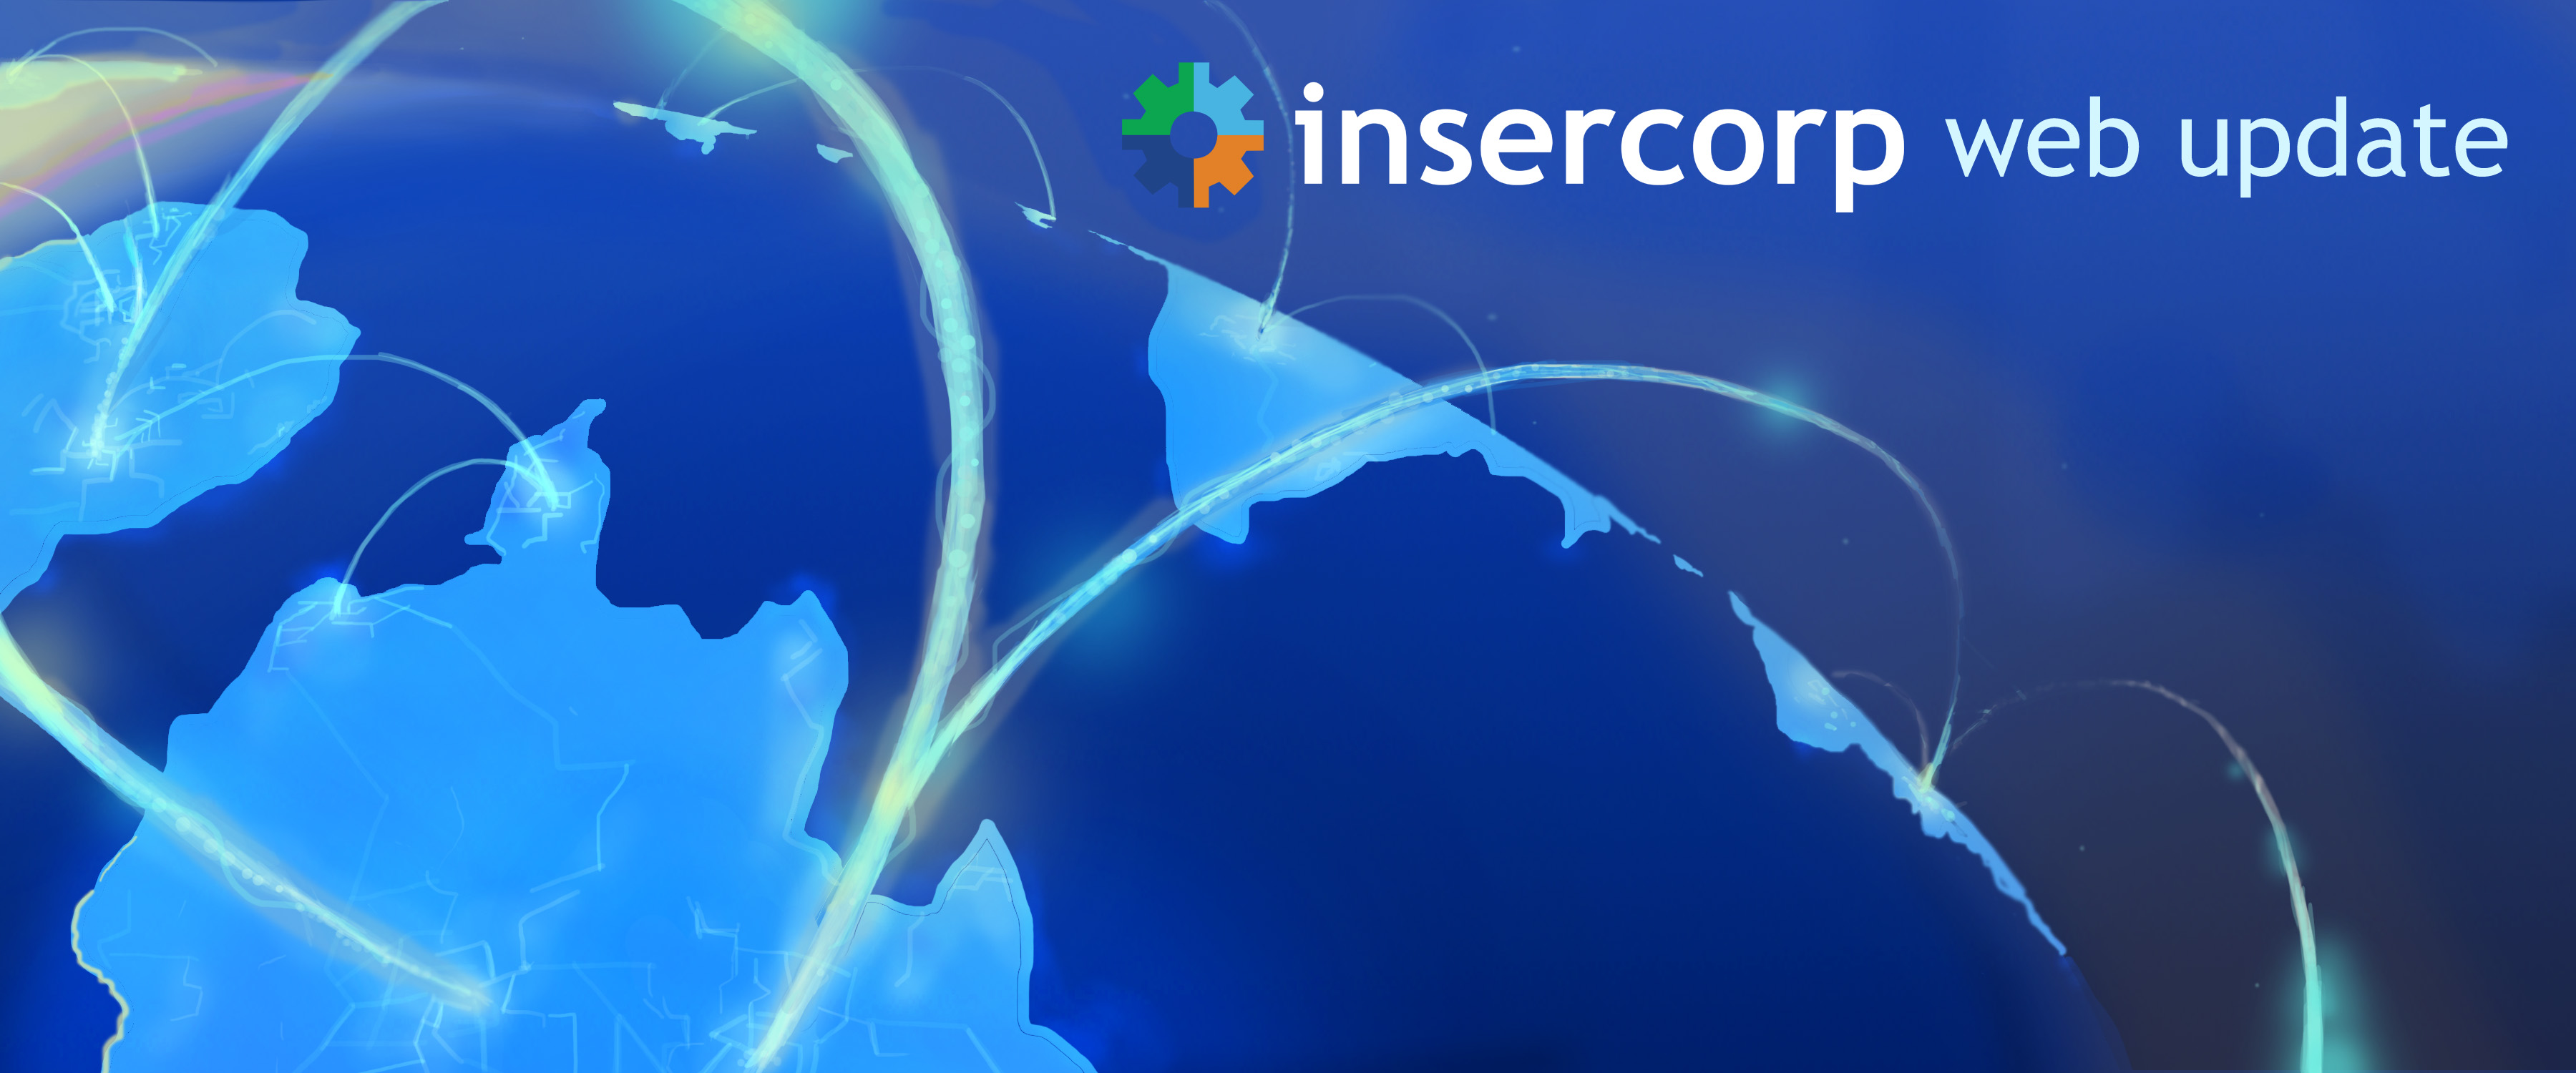 Insercorp Web Update